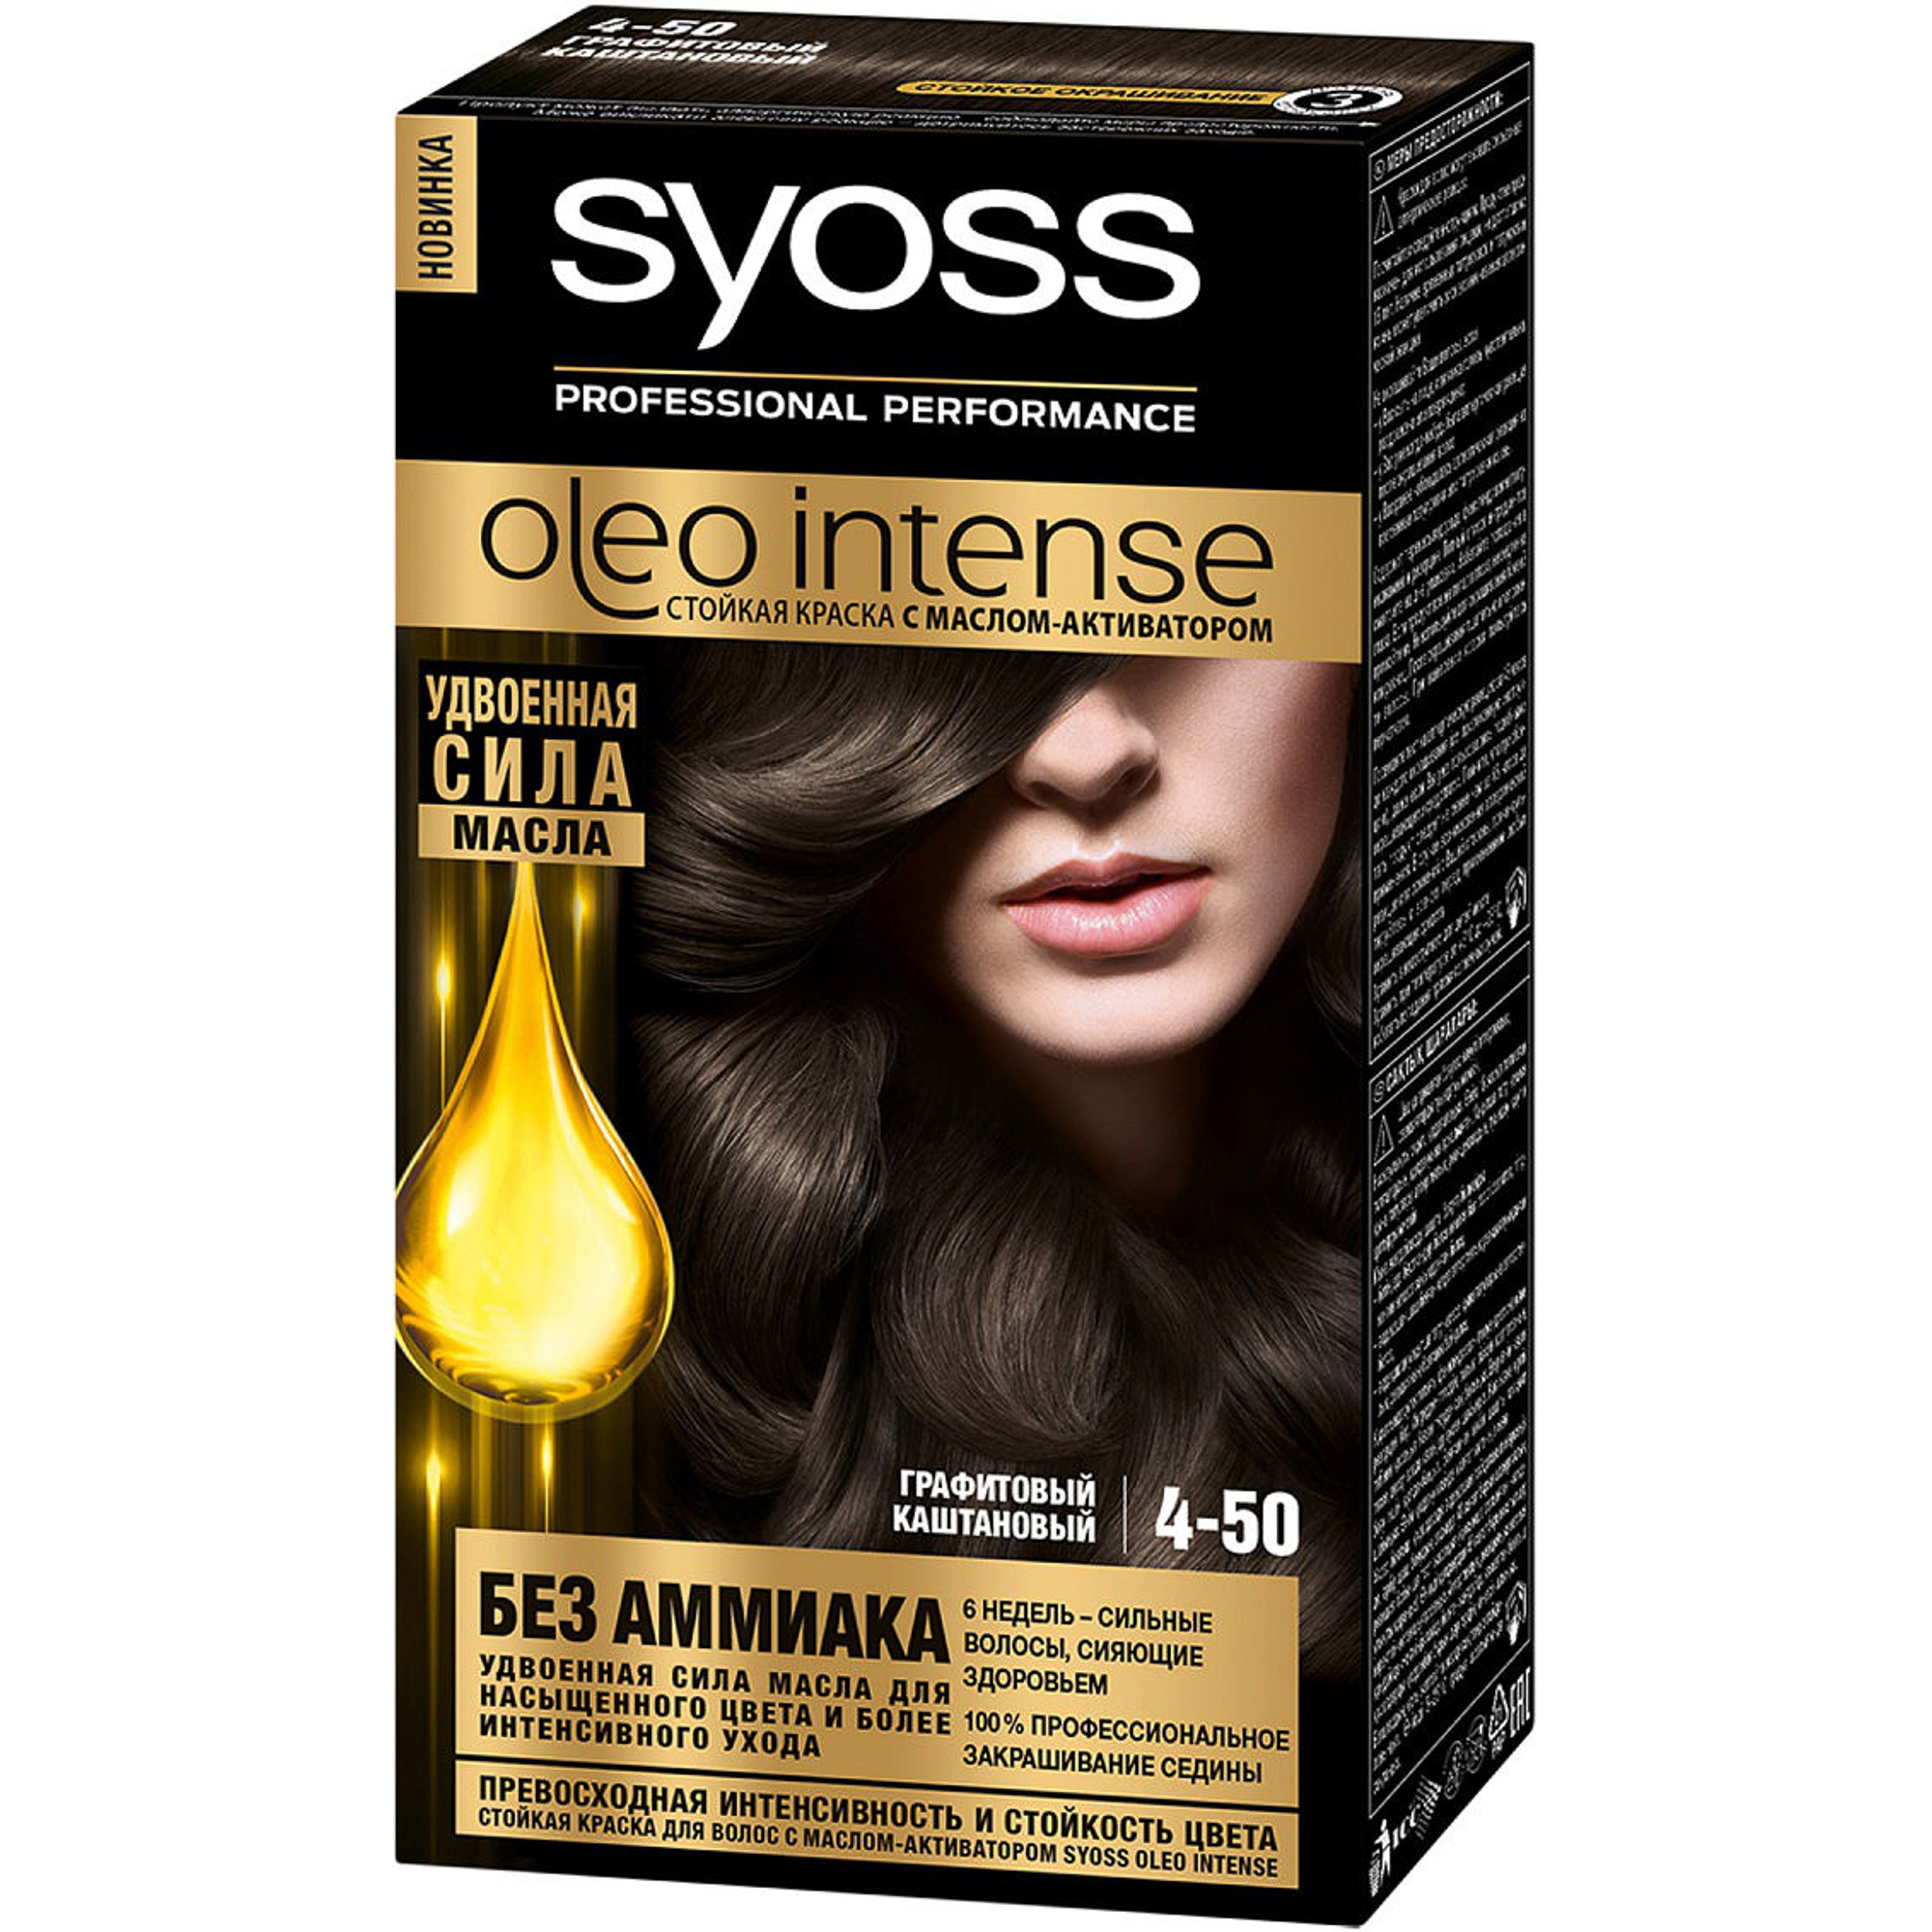 Краска для волос Syoss Oleo Intense 4-50 Графитовый каштановый набор из 3 штук краска для волос syoss oleo intense 4 50 графитовый каштан